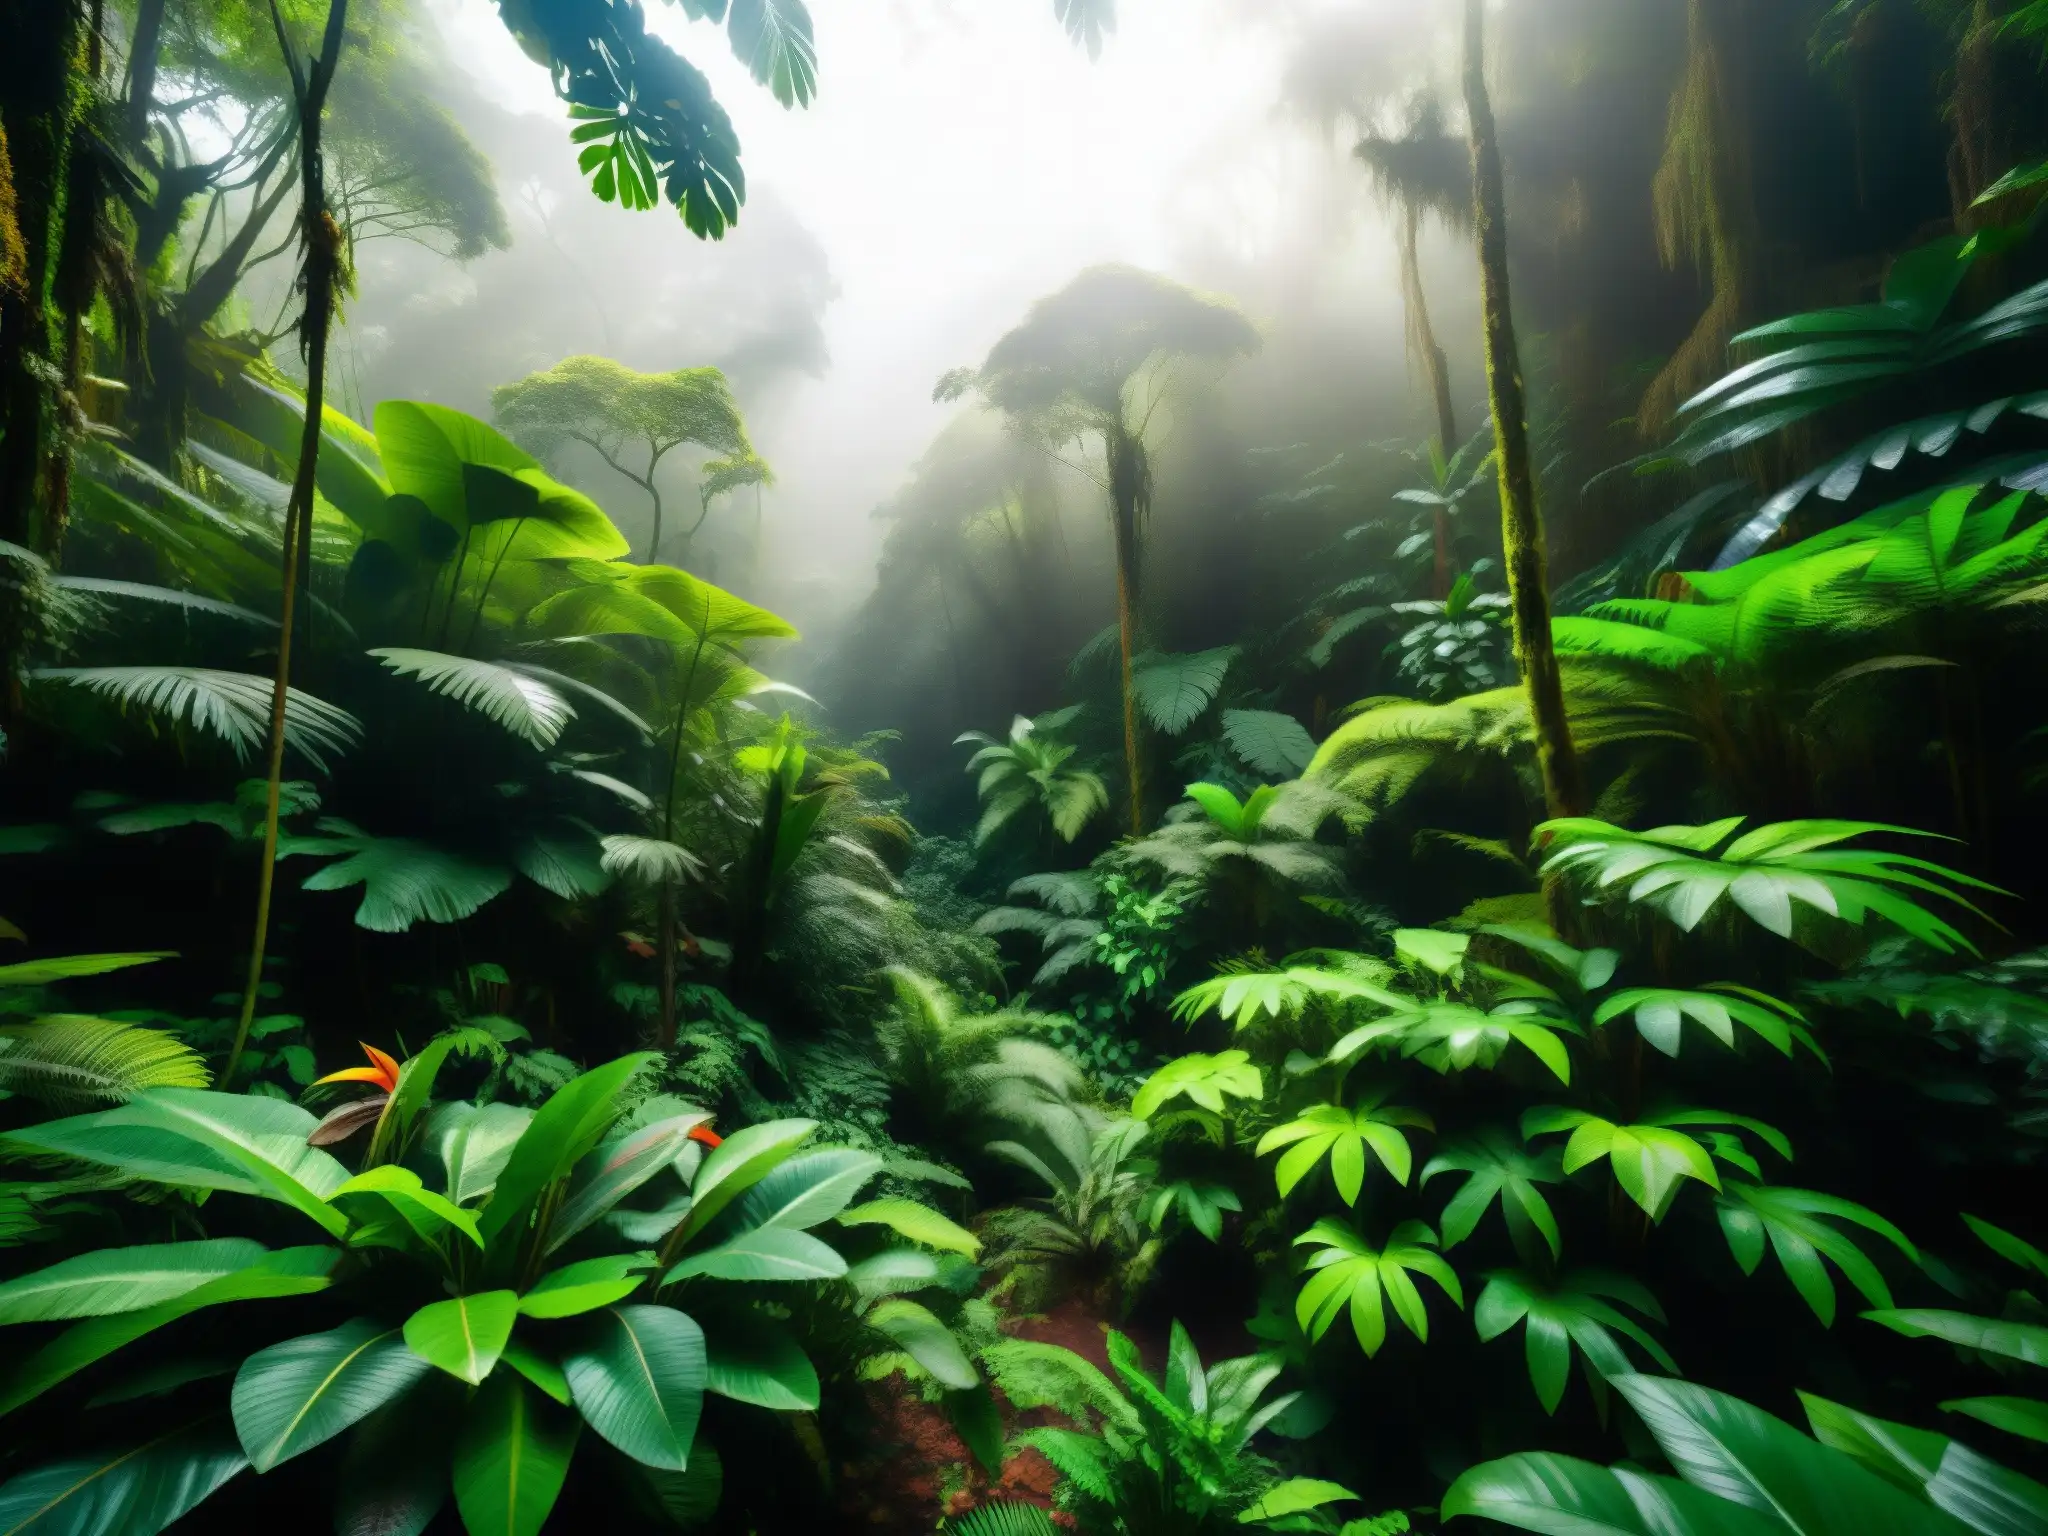 Un bosque denso de la selva amazónica, con follaje verde vibrante, neblina y árboles exóticos